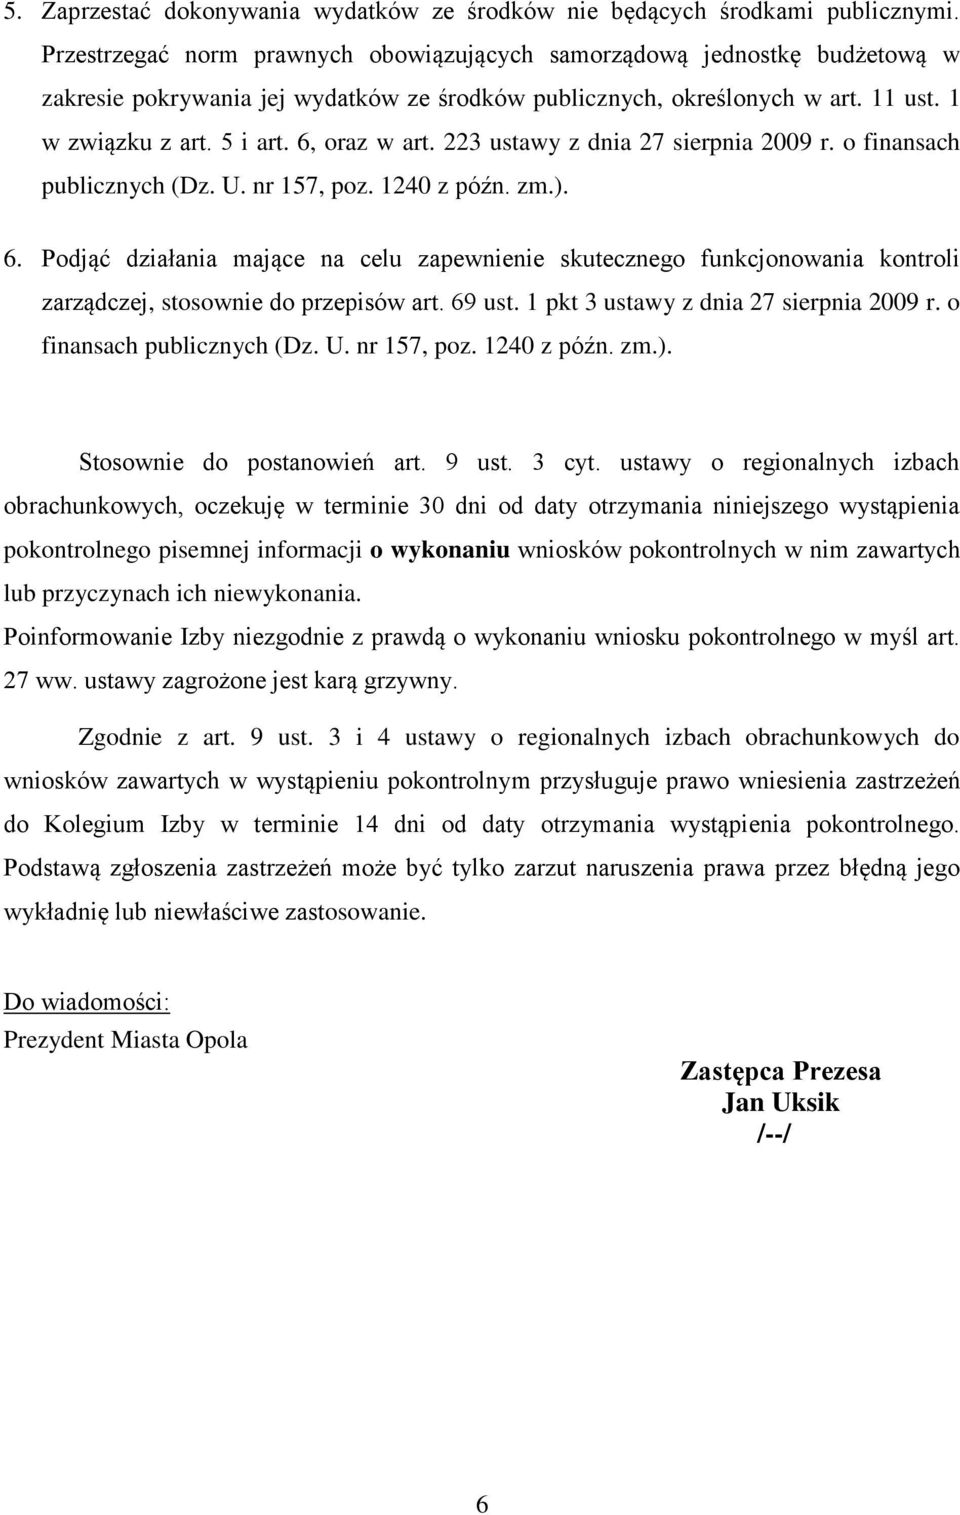 6, oraz w art. 223 ustawy z dnia 27 sierpnia 2009 r. o finansach publicznych (Dz. U. nr 157, poz. 1240 z późn. zm.). 6.